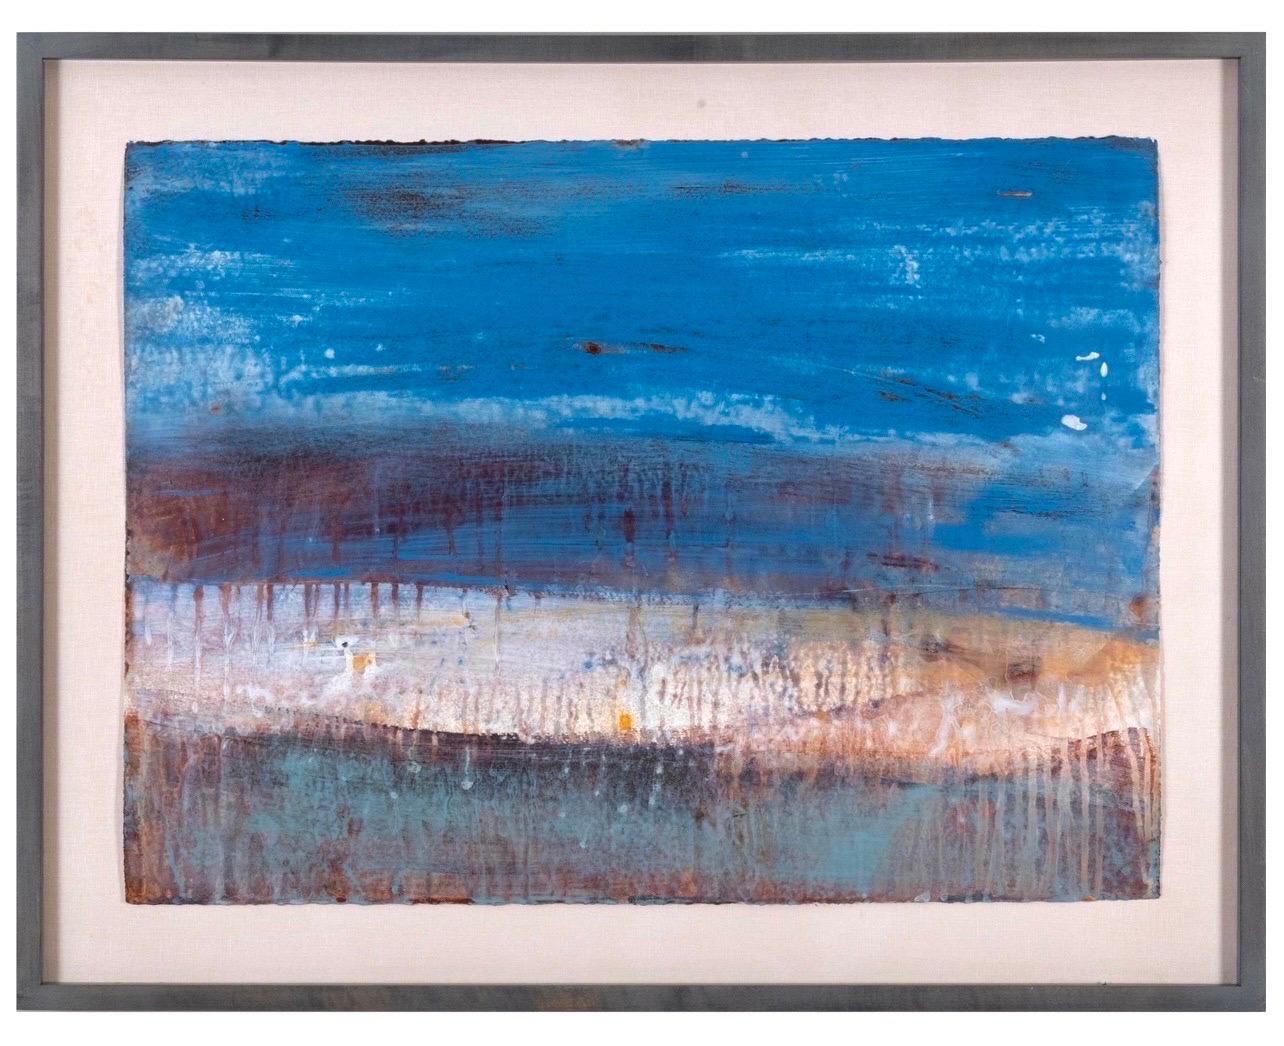 Châle Dulaney en plâtre peint représentant un paysage vénitien, vertus expressionnistes abstraites